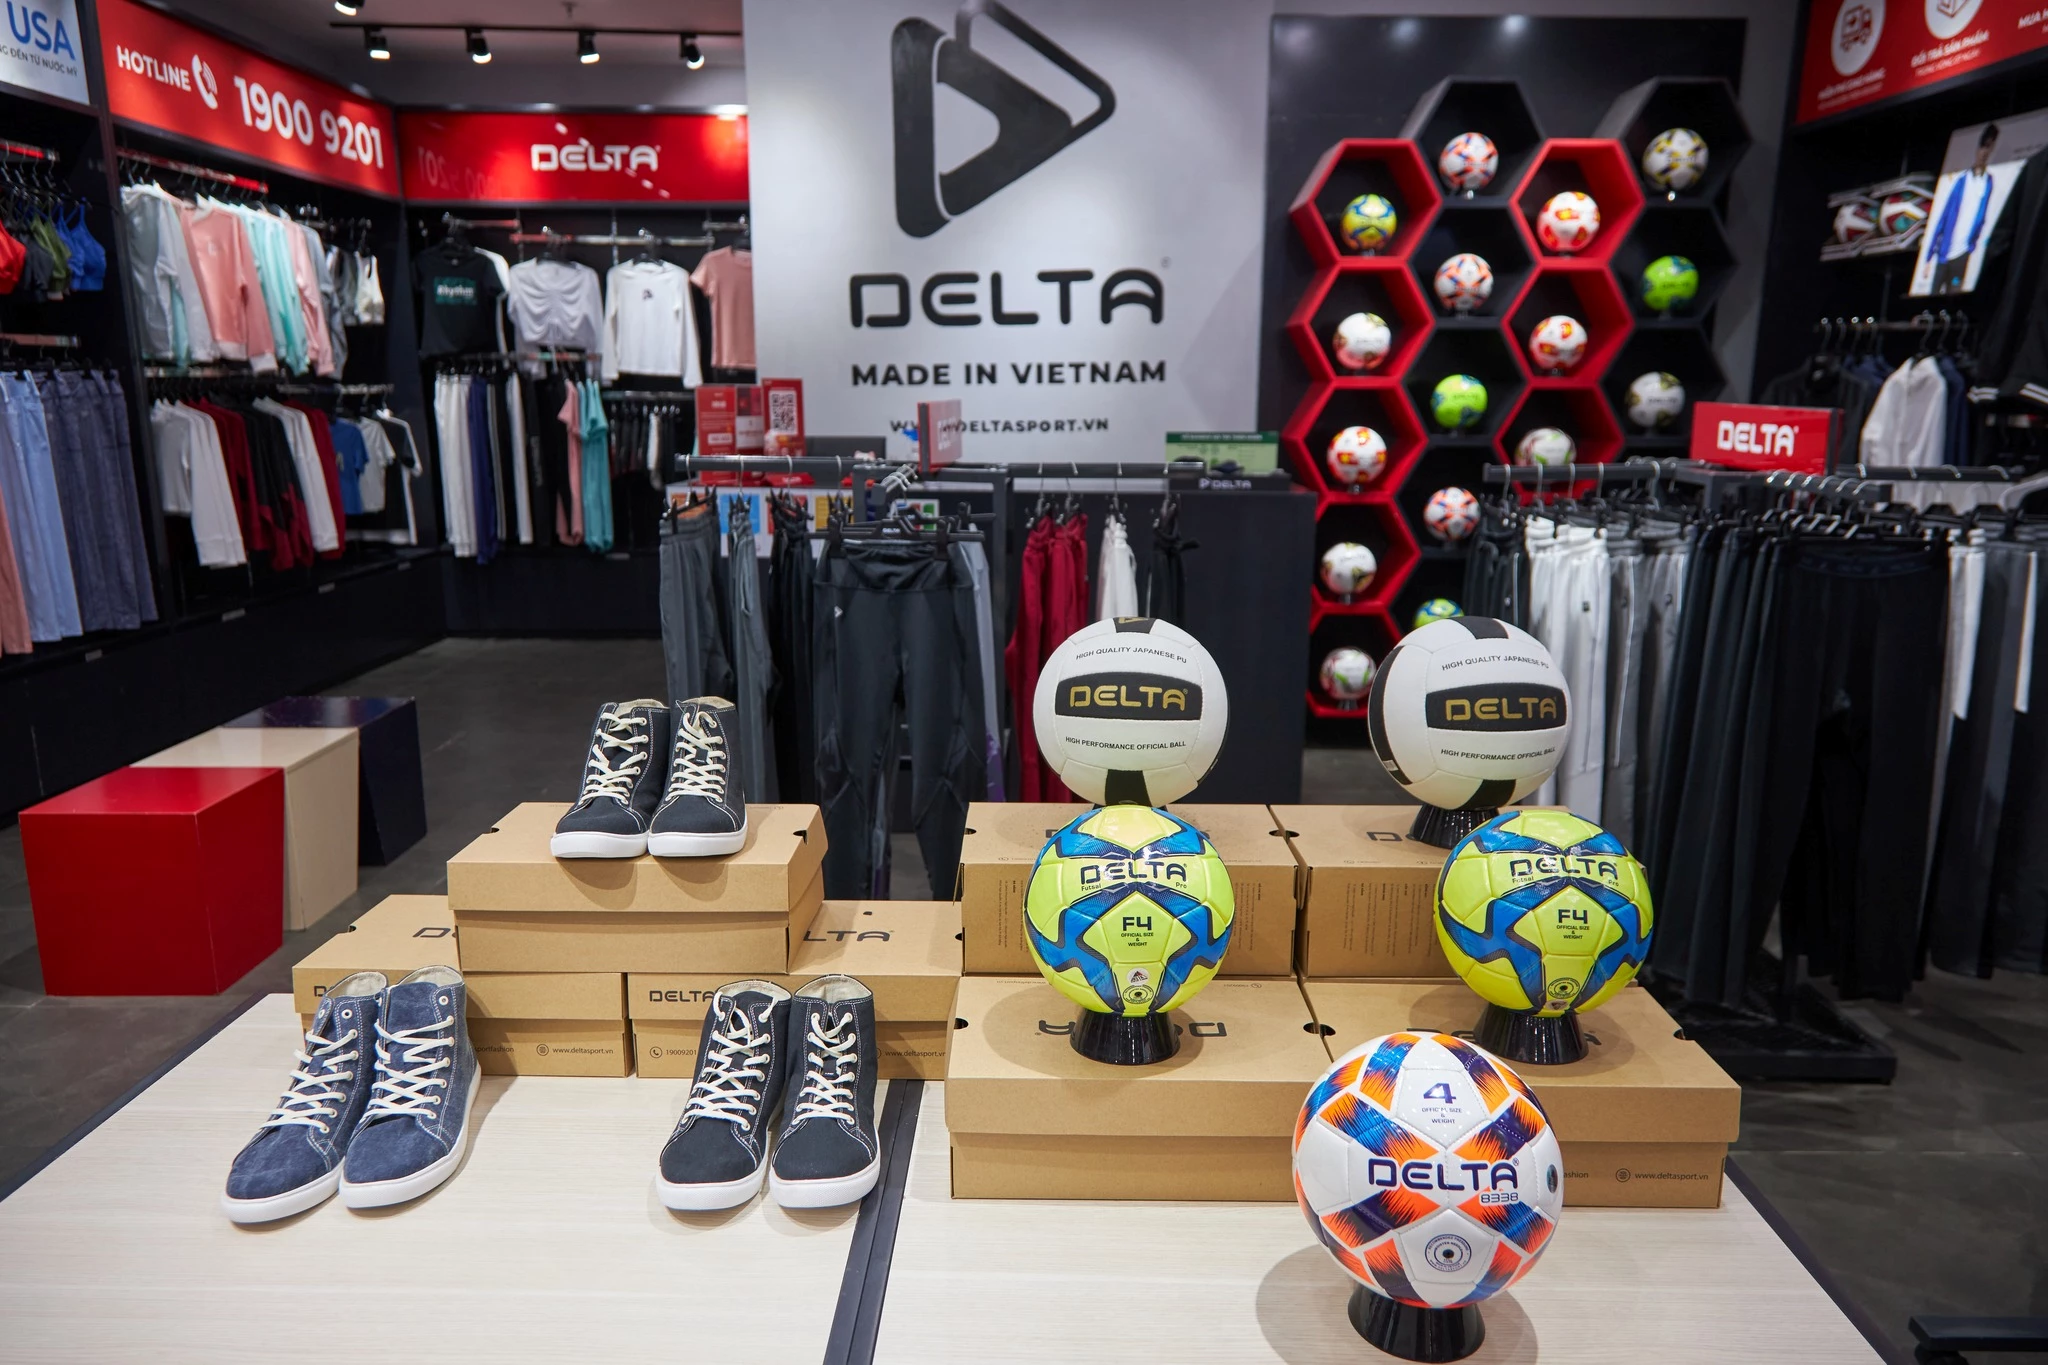 Delta cung cấp hơn 2 triệu bóng thể thao hàng năm cho các thương hiệu và các giải đấu lớn trên thế giới như Mizuno, Spalding, Uhlsport, New Balance, Under Amour, Ligue 1.